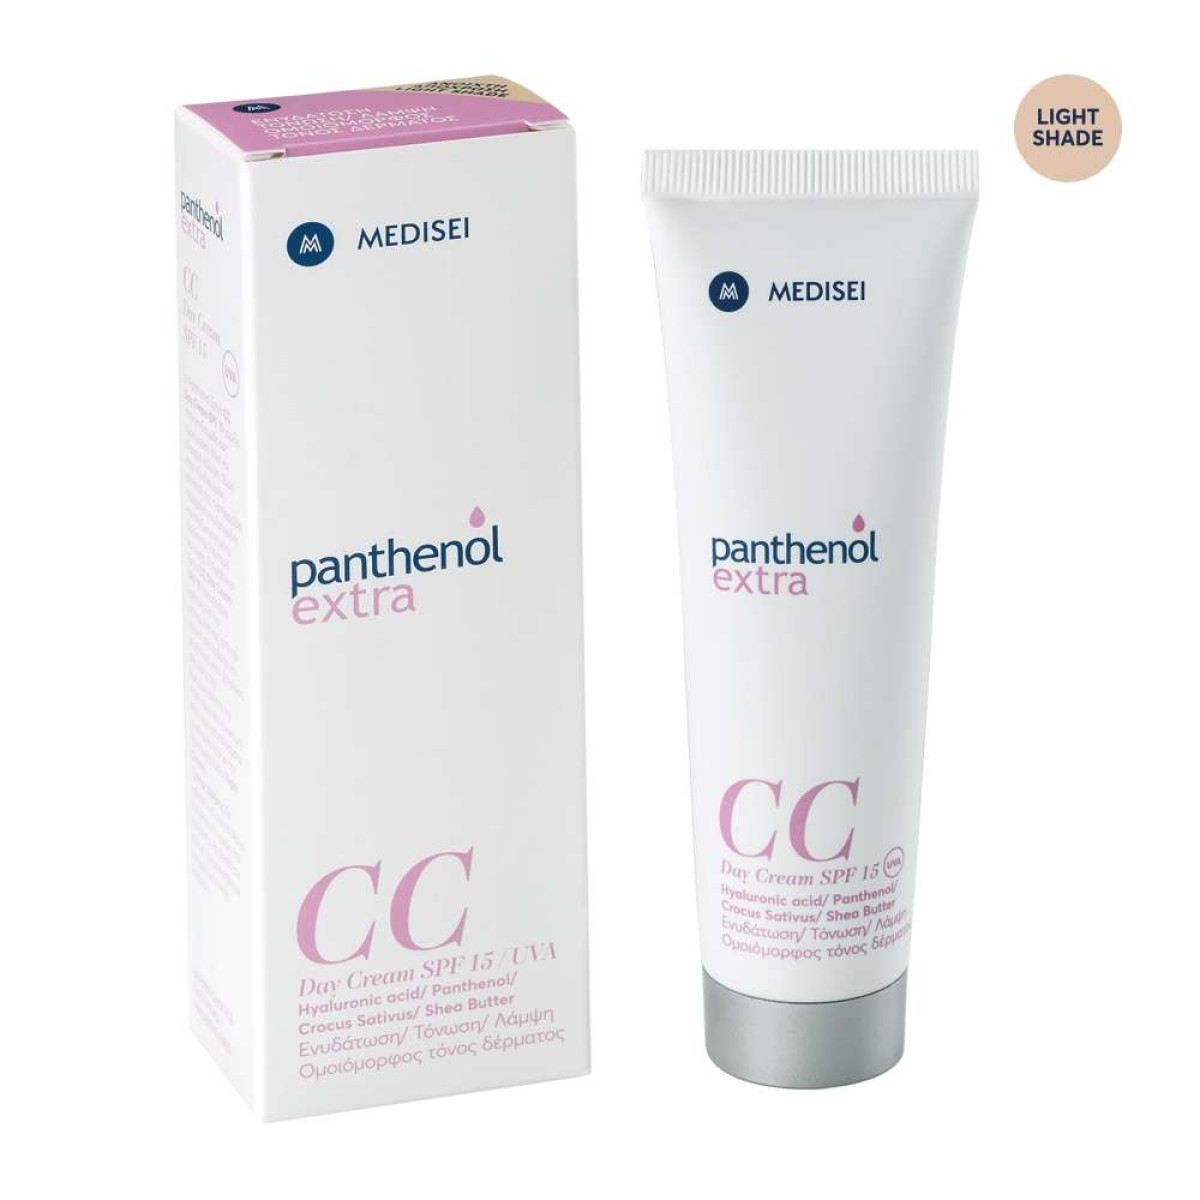 Medisei | Panthenol Extra | CC Day Cream SPF15 | Light | 50ml